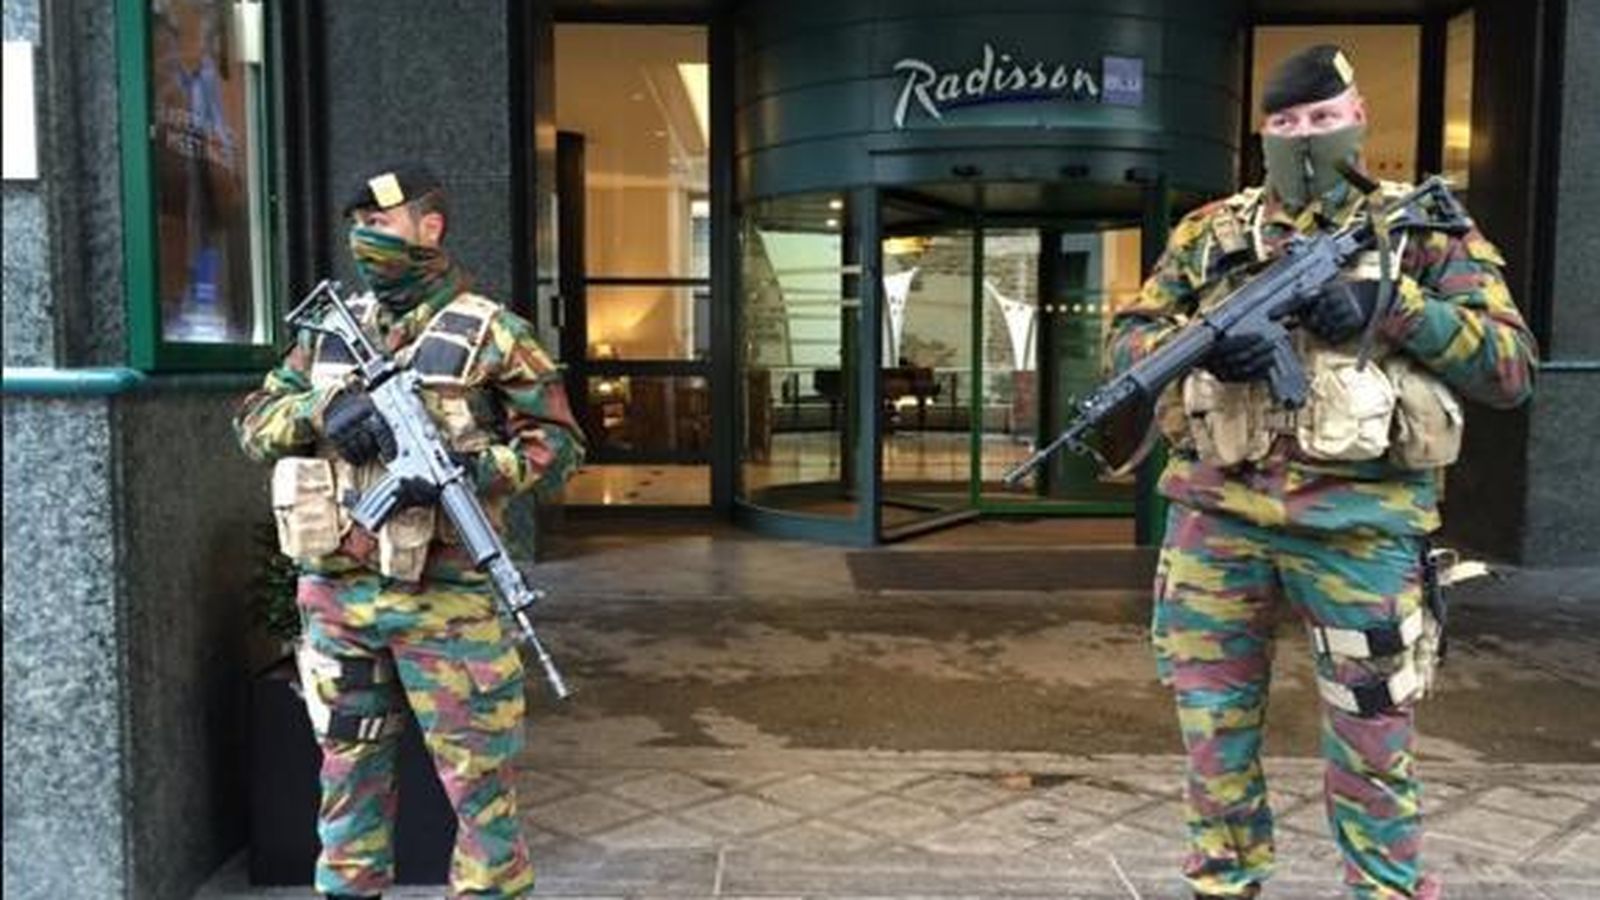 Foto: Soldados en la puerta del Radisson (Twitter)